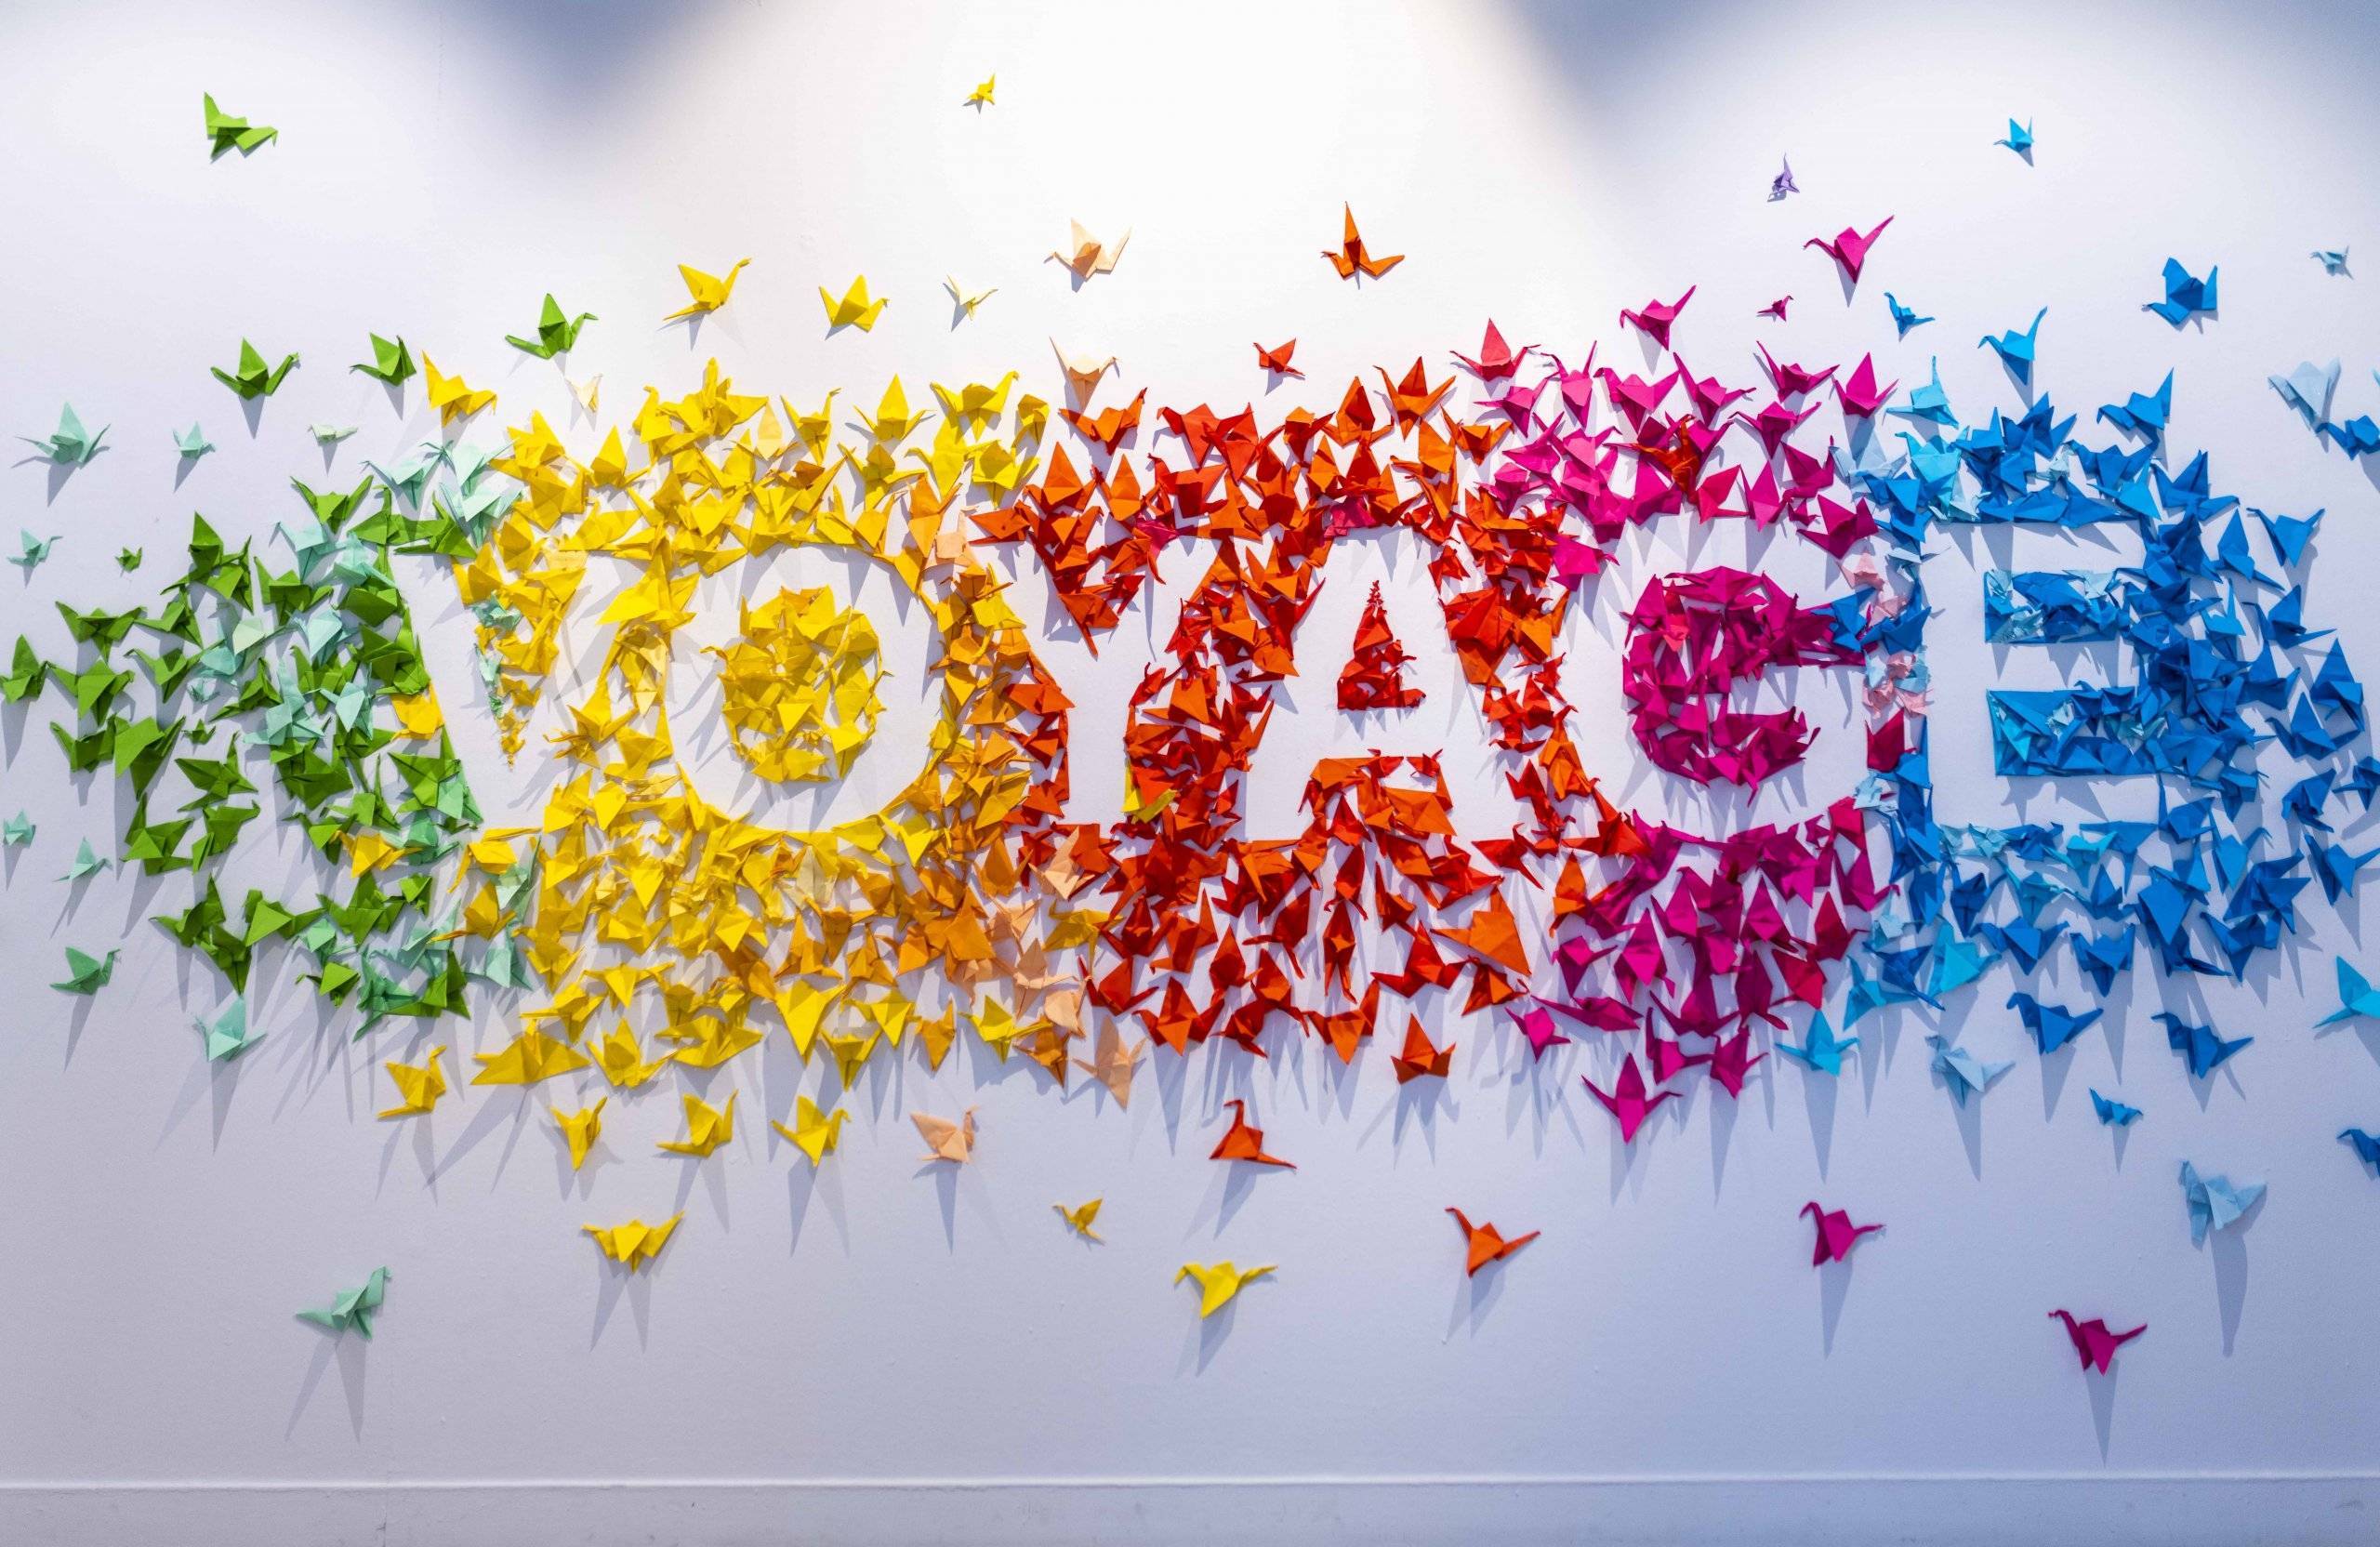 La palabra "Voyage" realizada con pajaritas de papel.